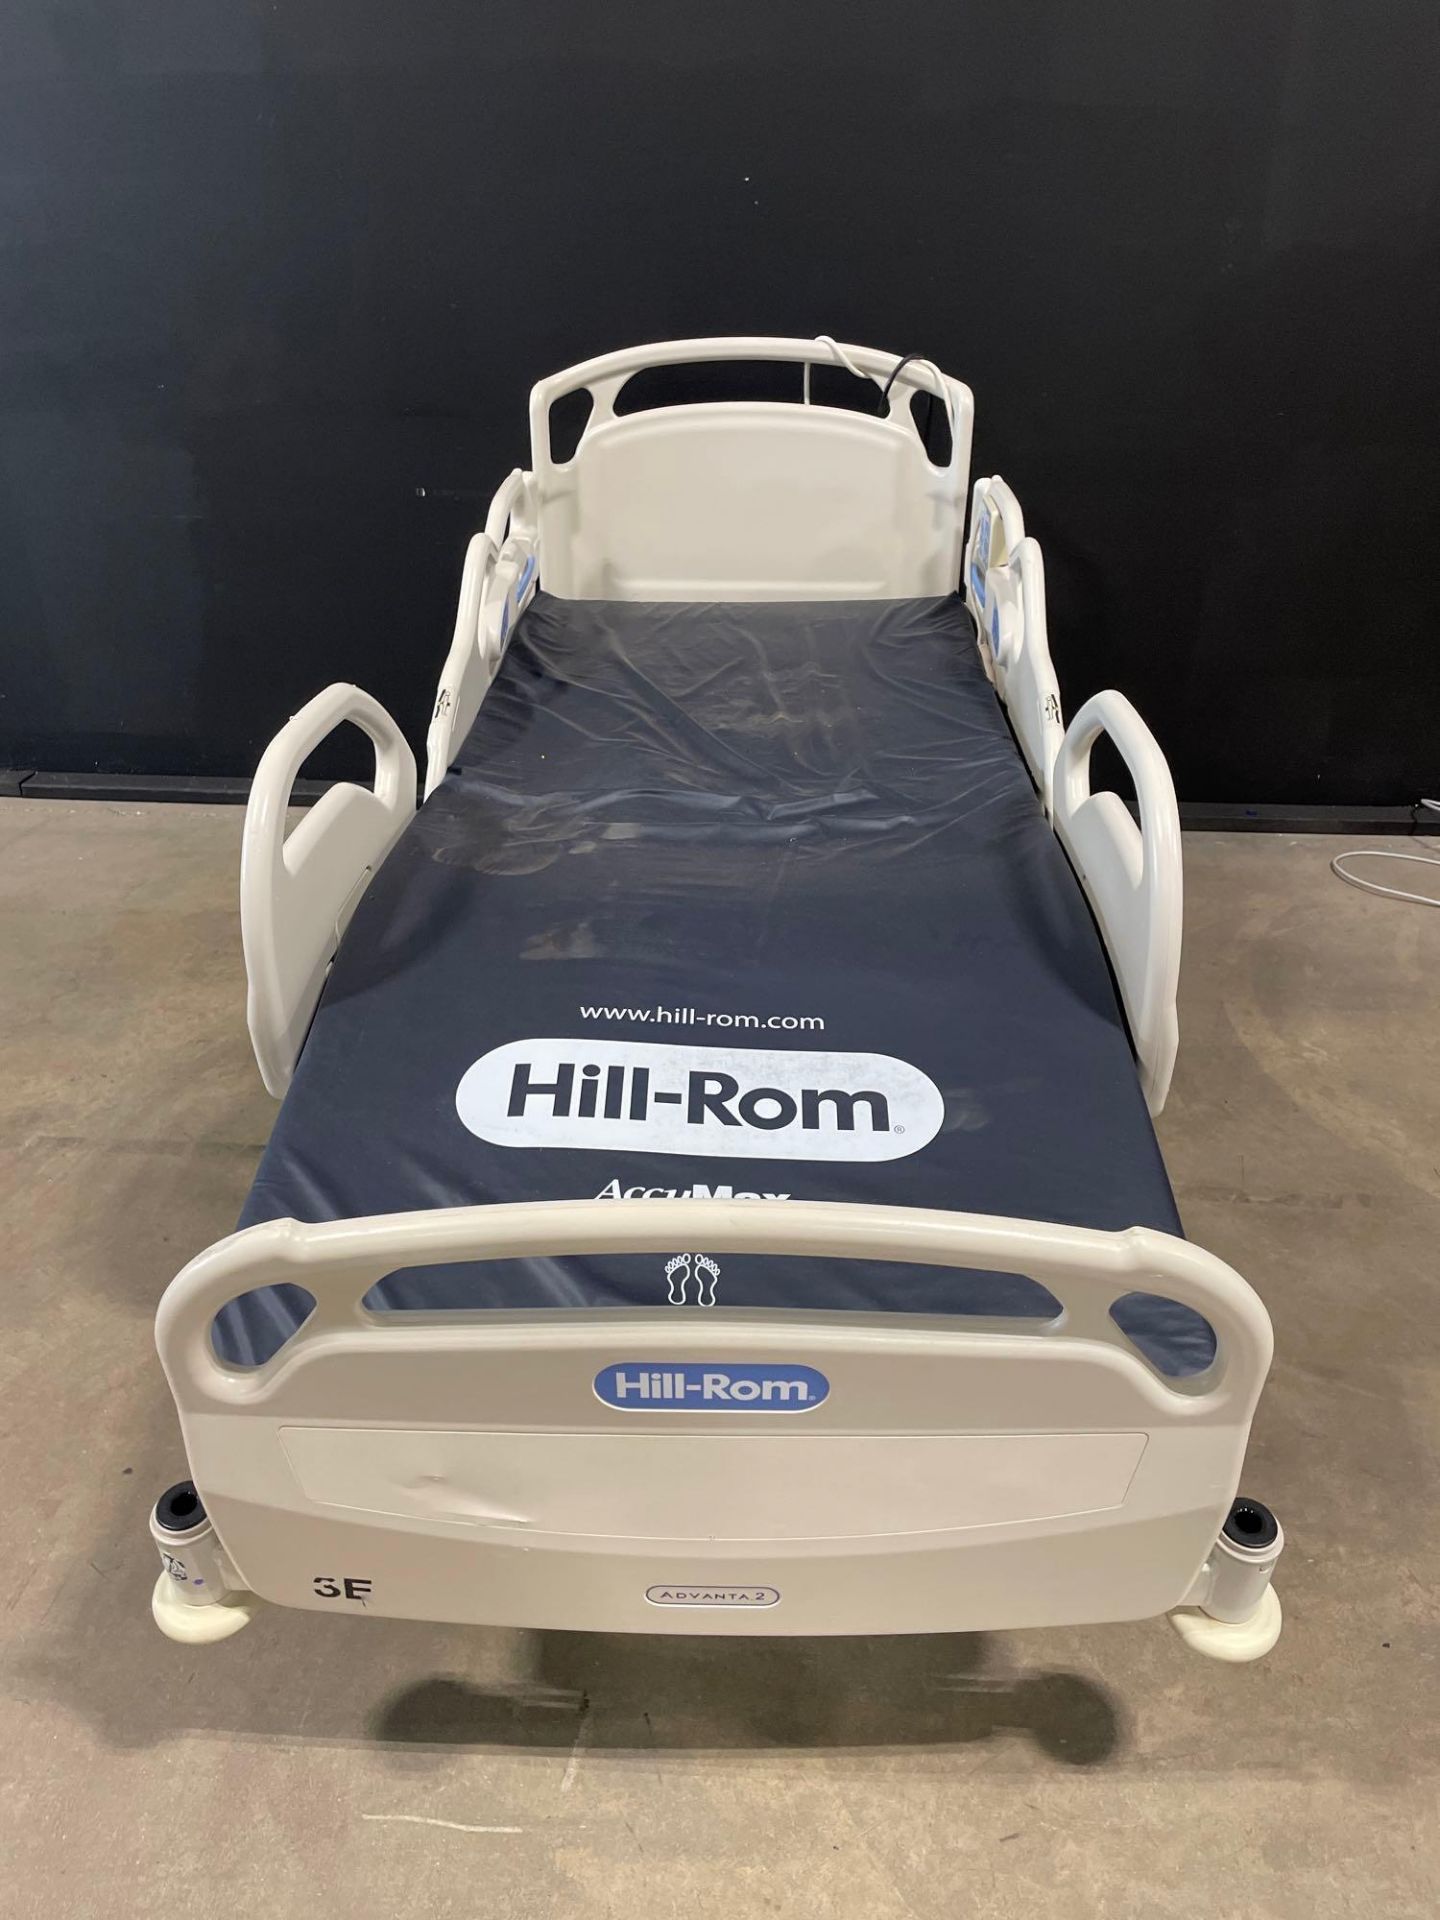 HILL-ROM ADVANTA 2 HOSPITAL BED